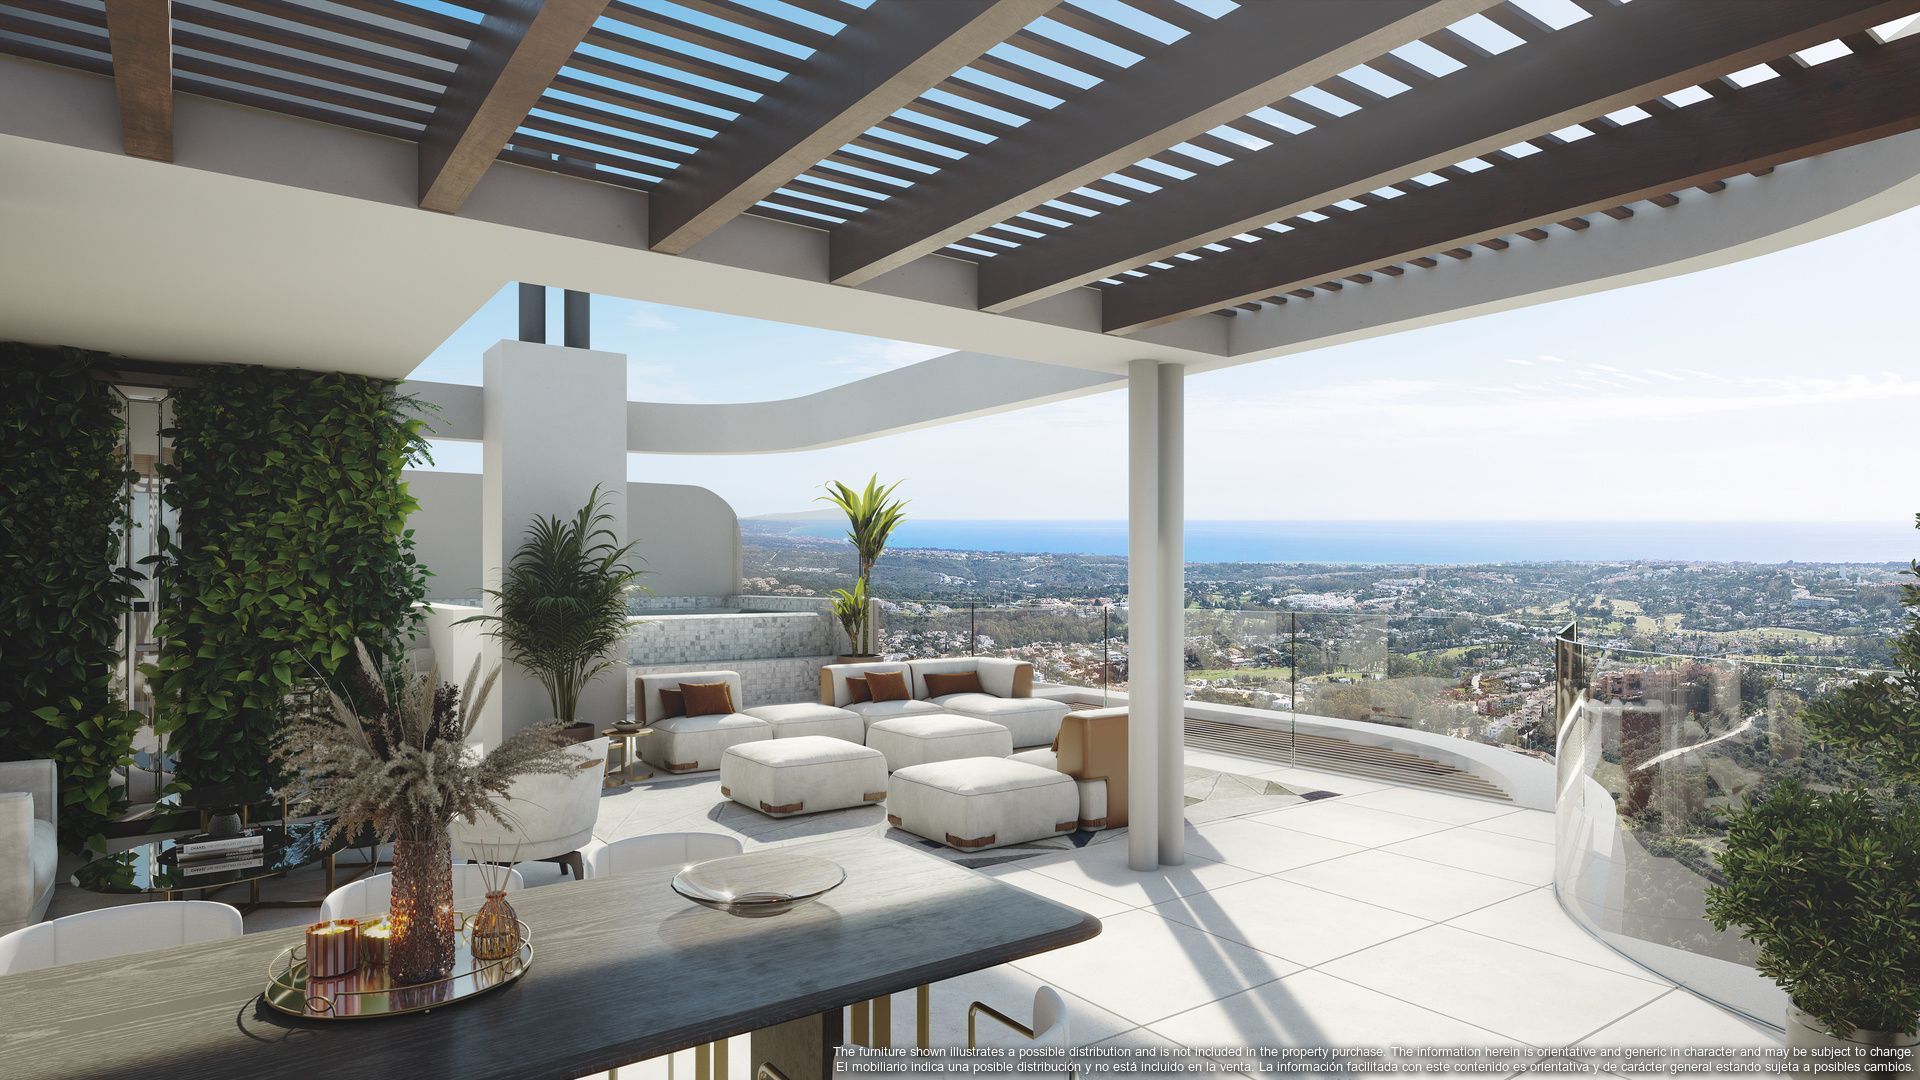 This latest development raises the bar for luxury living in Marbella, Benahavis foto-20